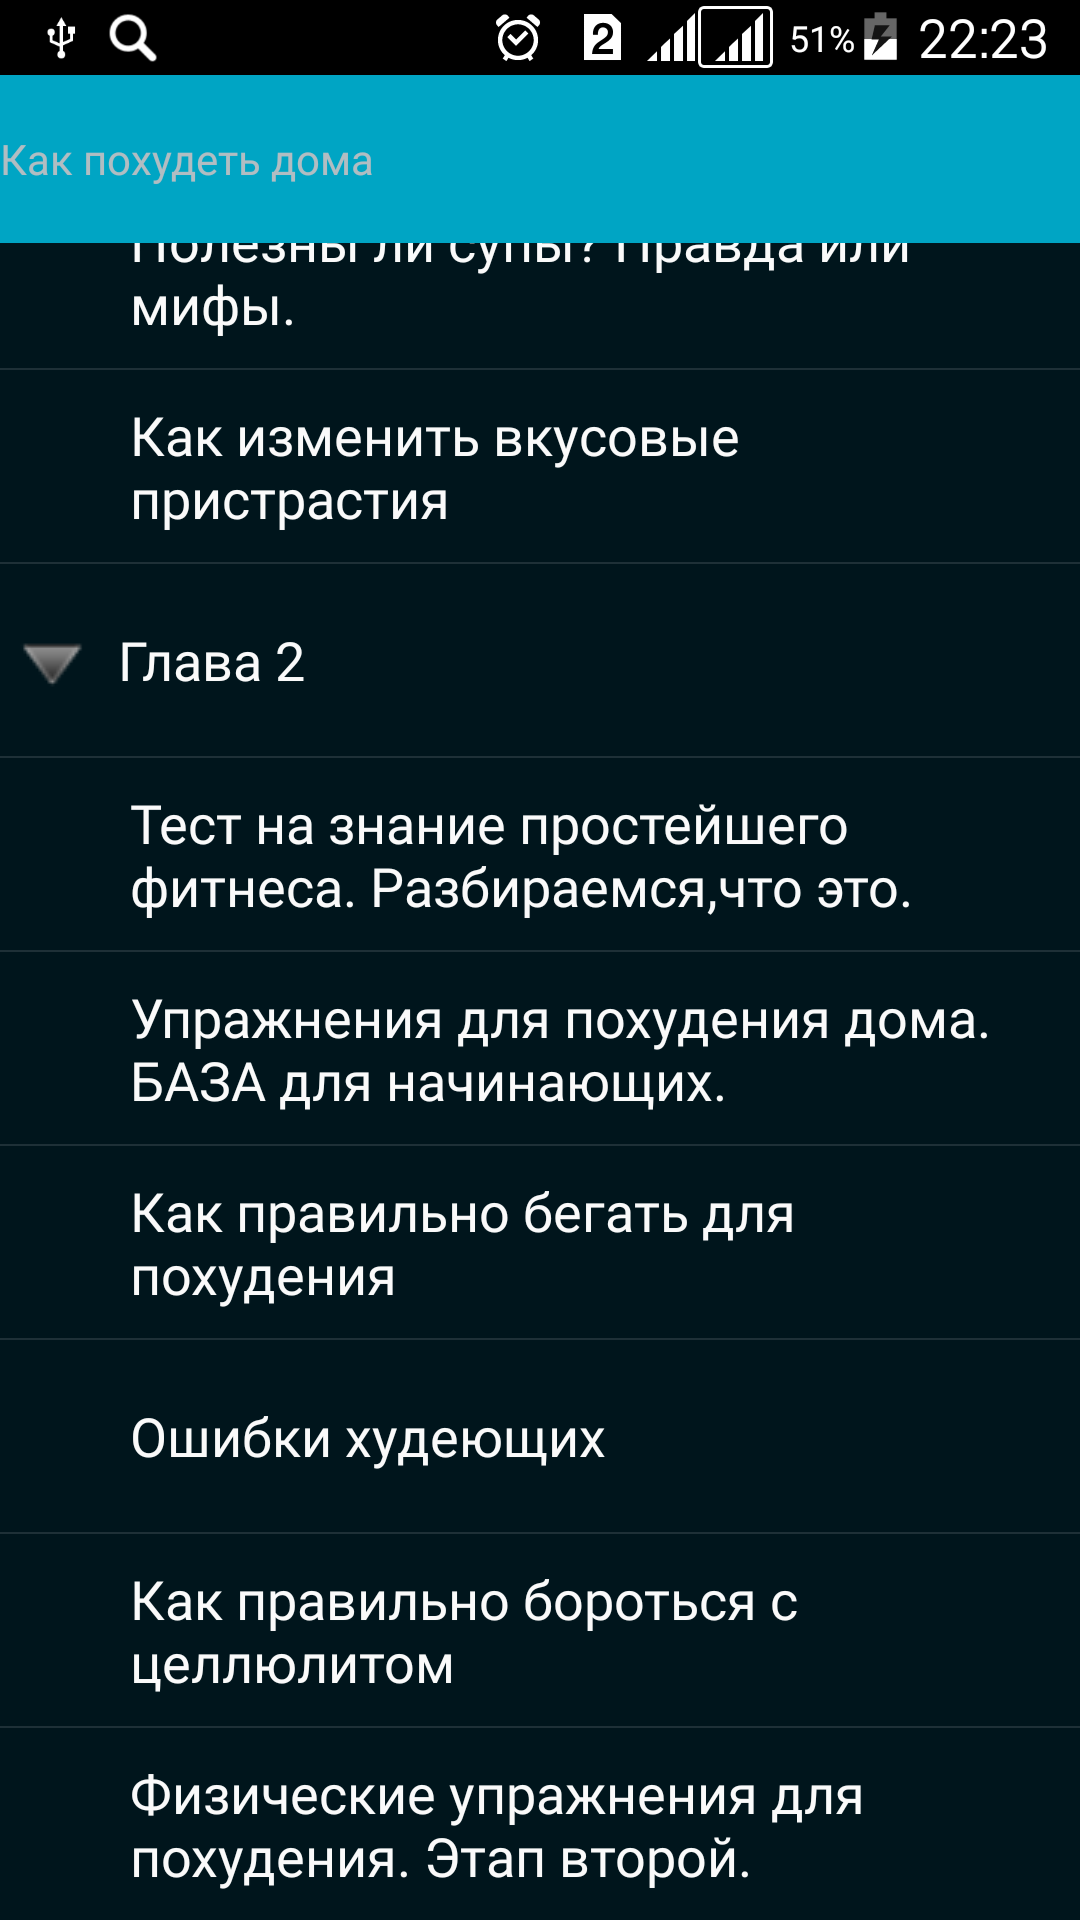 Android application Как Похудеть Дома.Убрать Живот screenshort